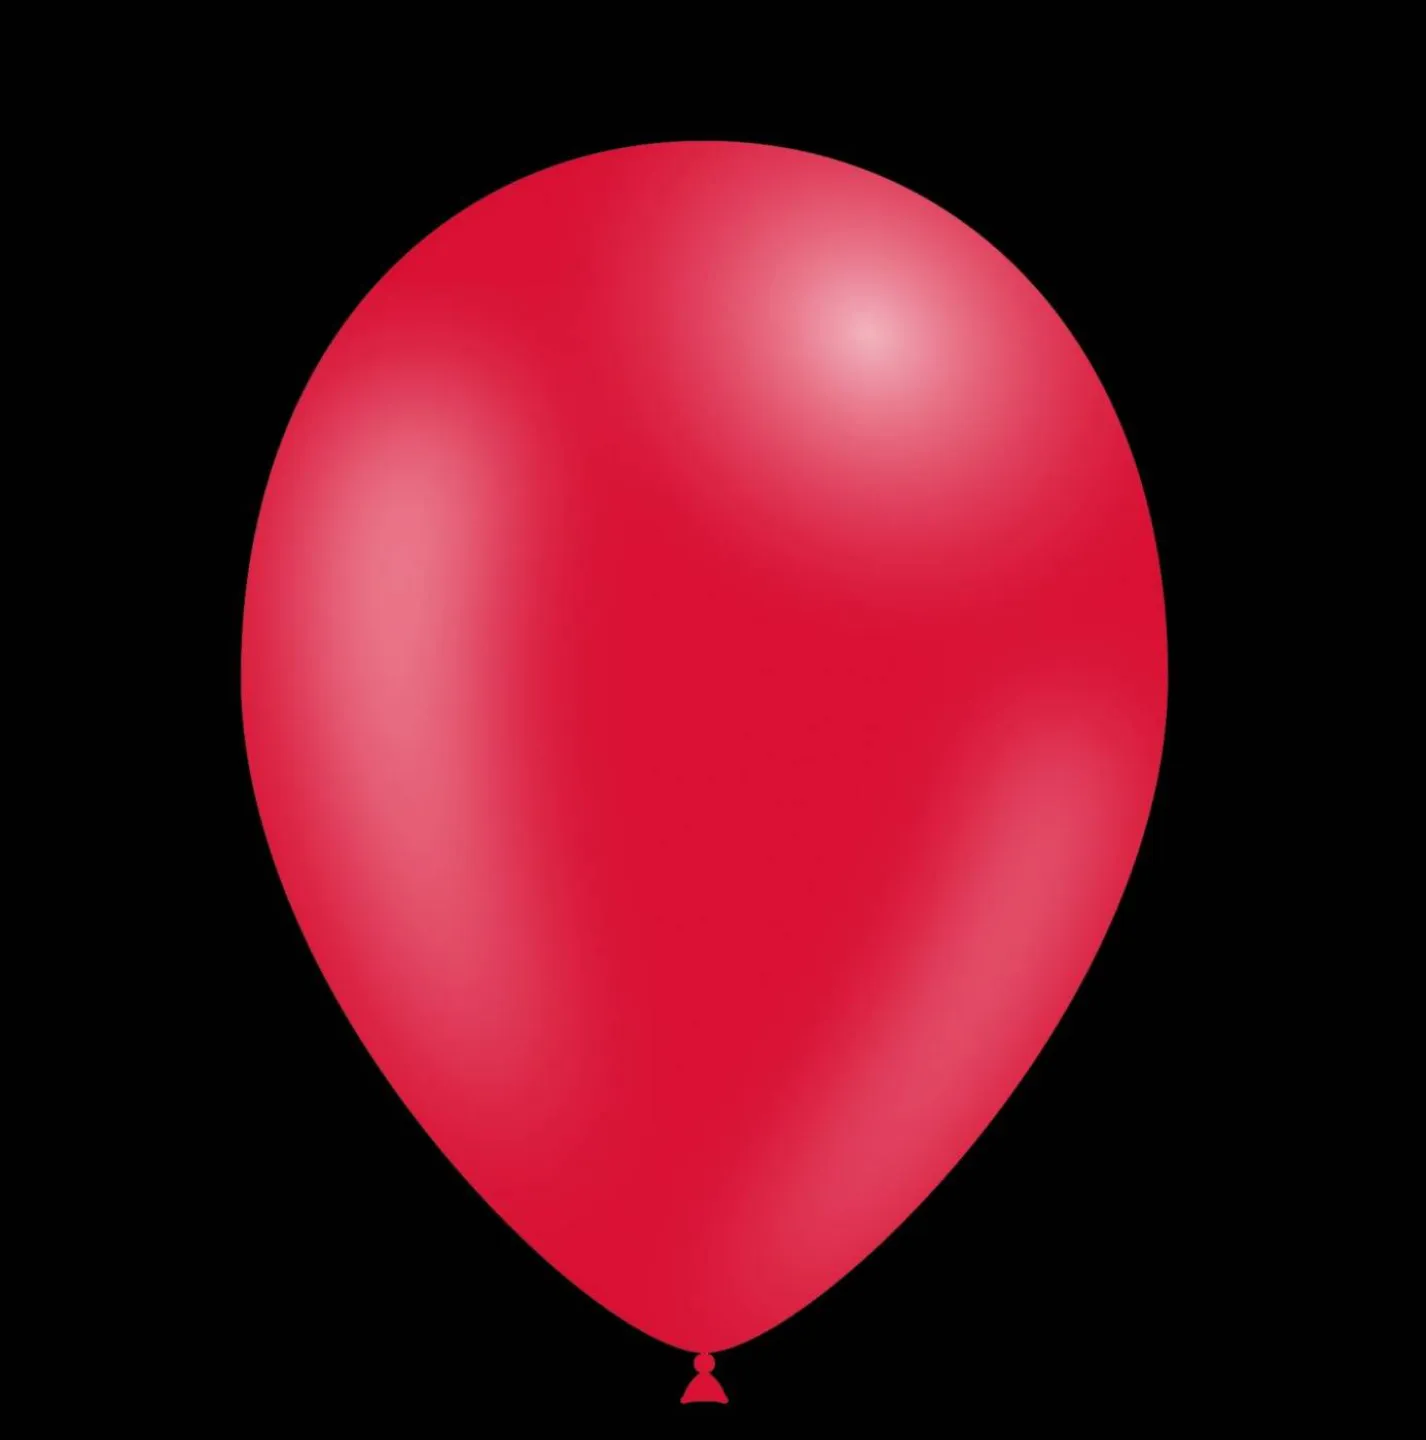 Rode ballonnen kopen voor uw feest.